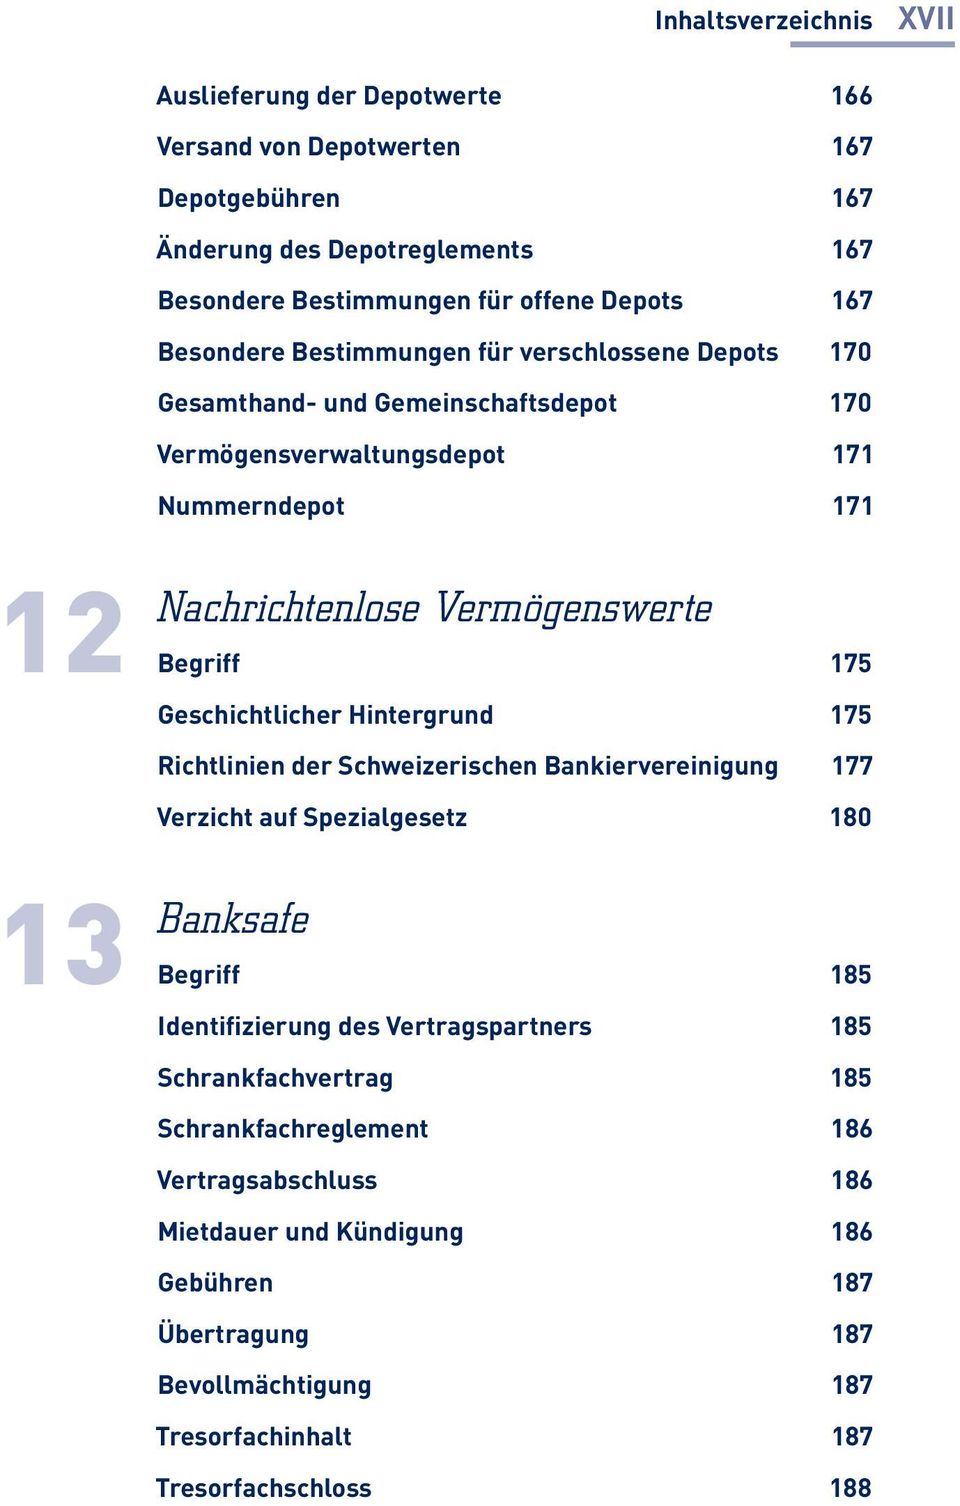 Geschichtlicher Hintergrund 175 Richtlinien der Schweizerischen Bankiervereinigung 177 Verzicht auf Spezialgesetz 180 13 Banksafe Begriff 185 Identifizierung des Vertragspartners 185